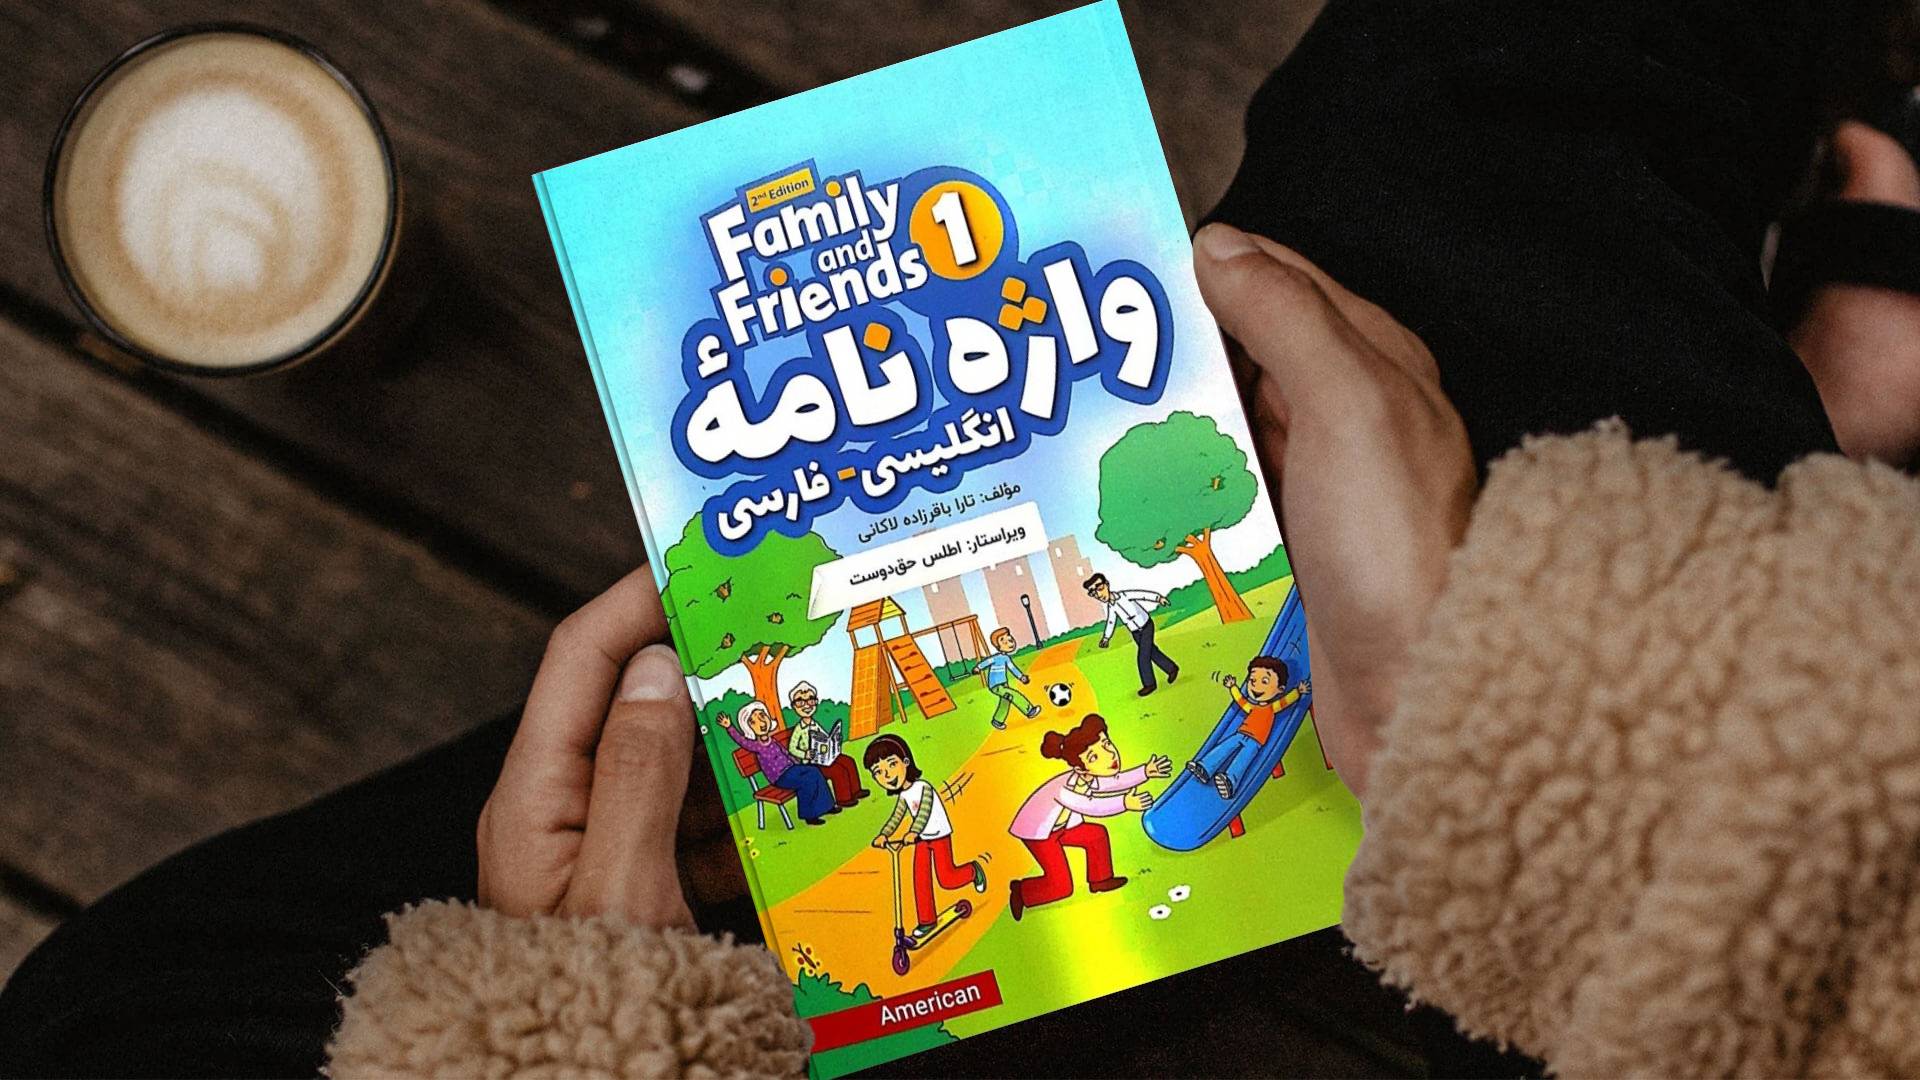 کتاب واژه نامه انگلیسی فارسی امریکن فمیلی اند فرندز یک ویرایش دوم American Family and Friends 1 2nd Edition